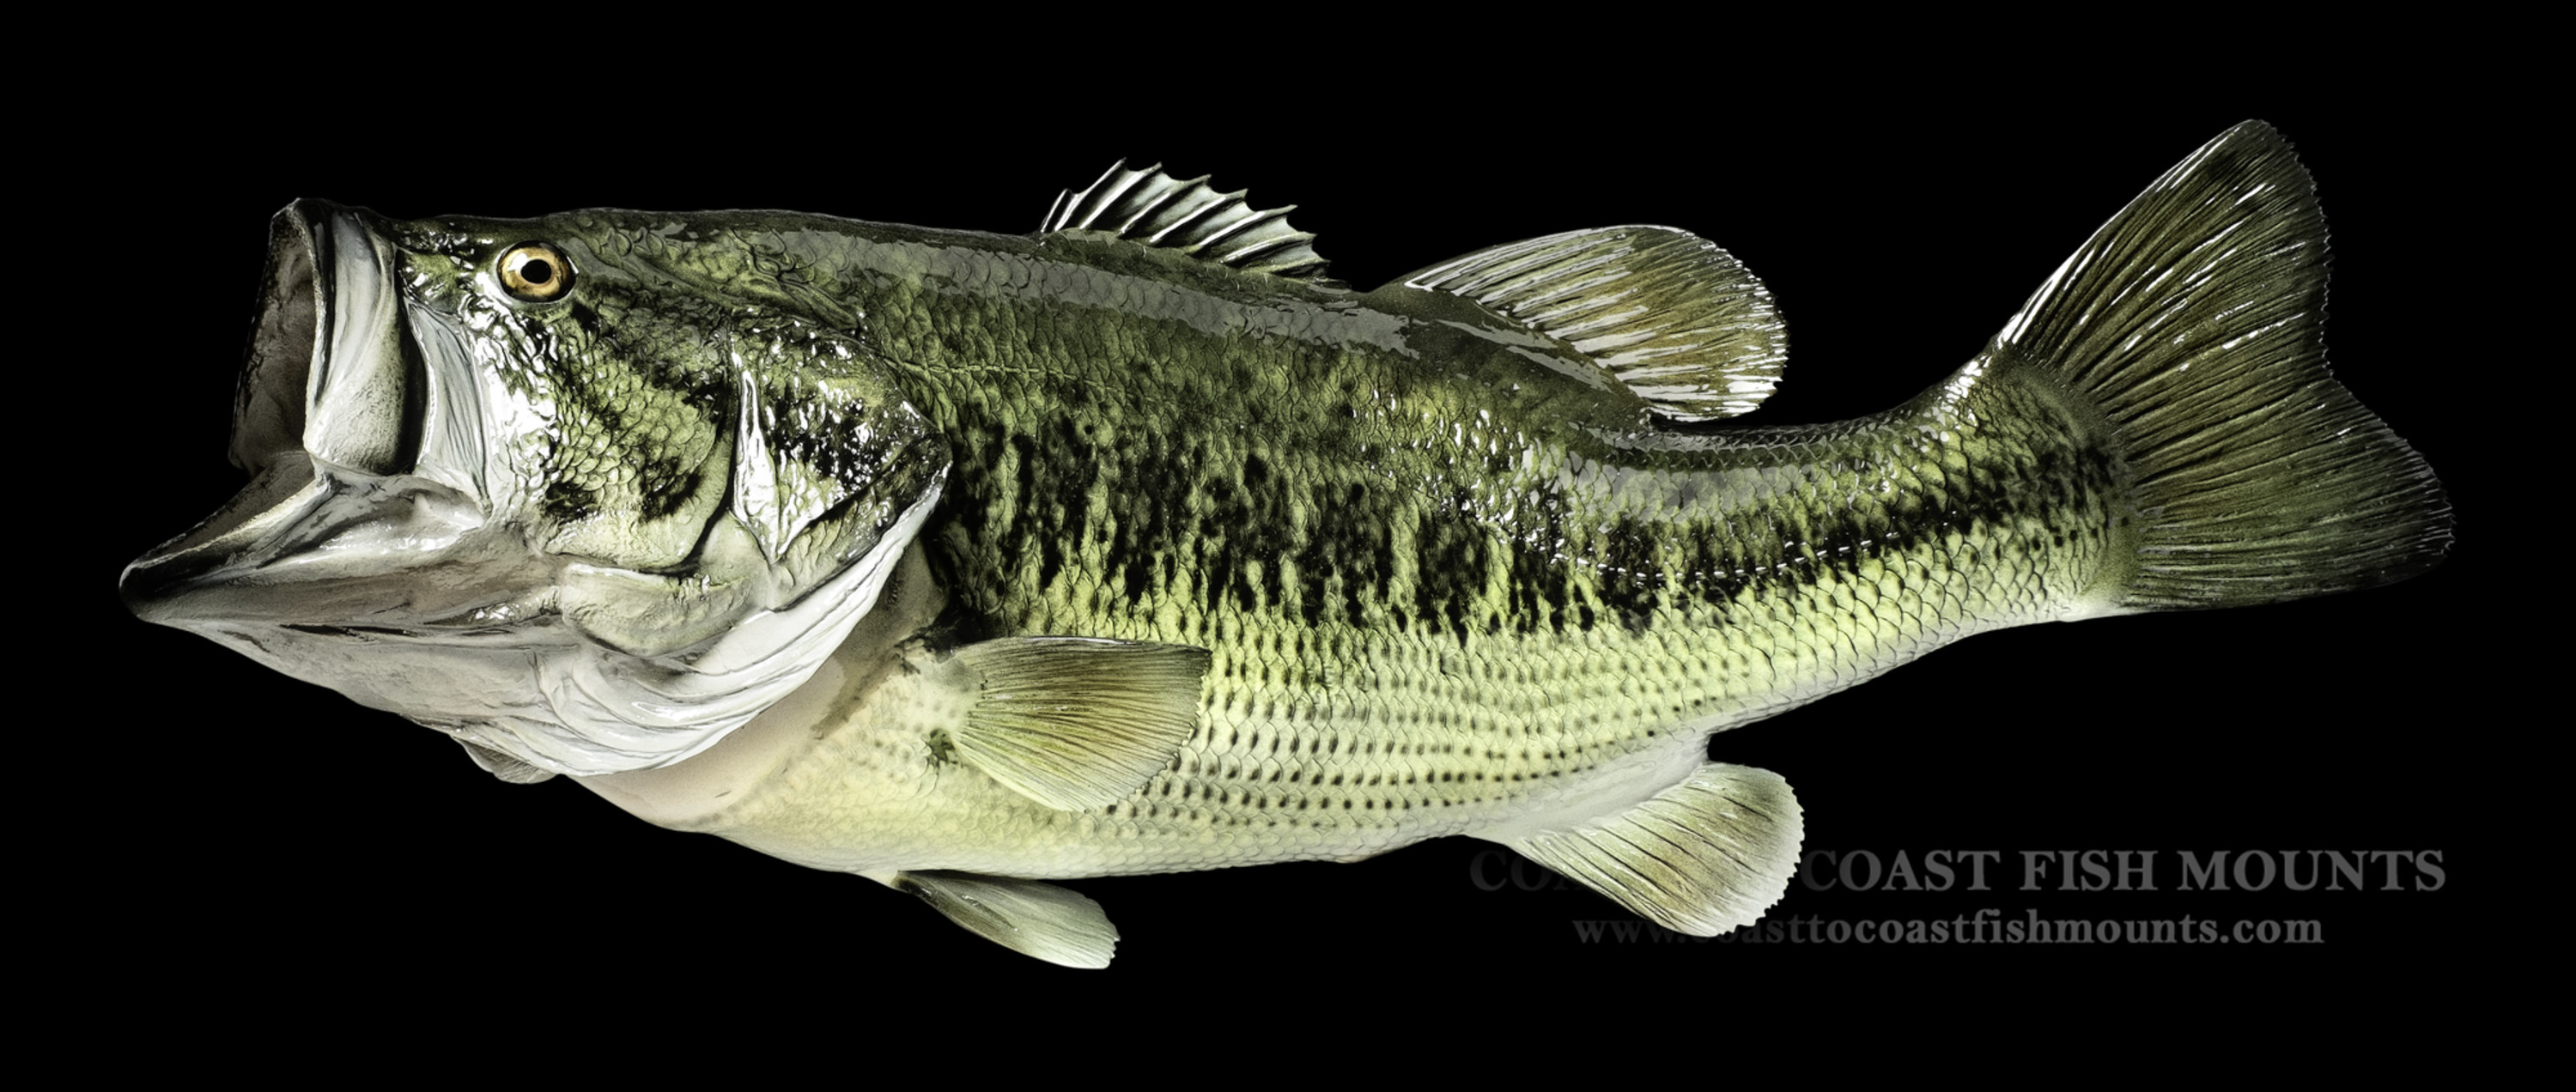 largemouth bass fish mount